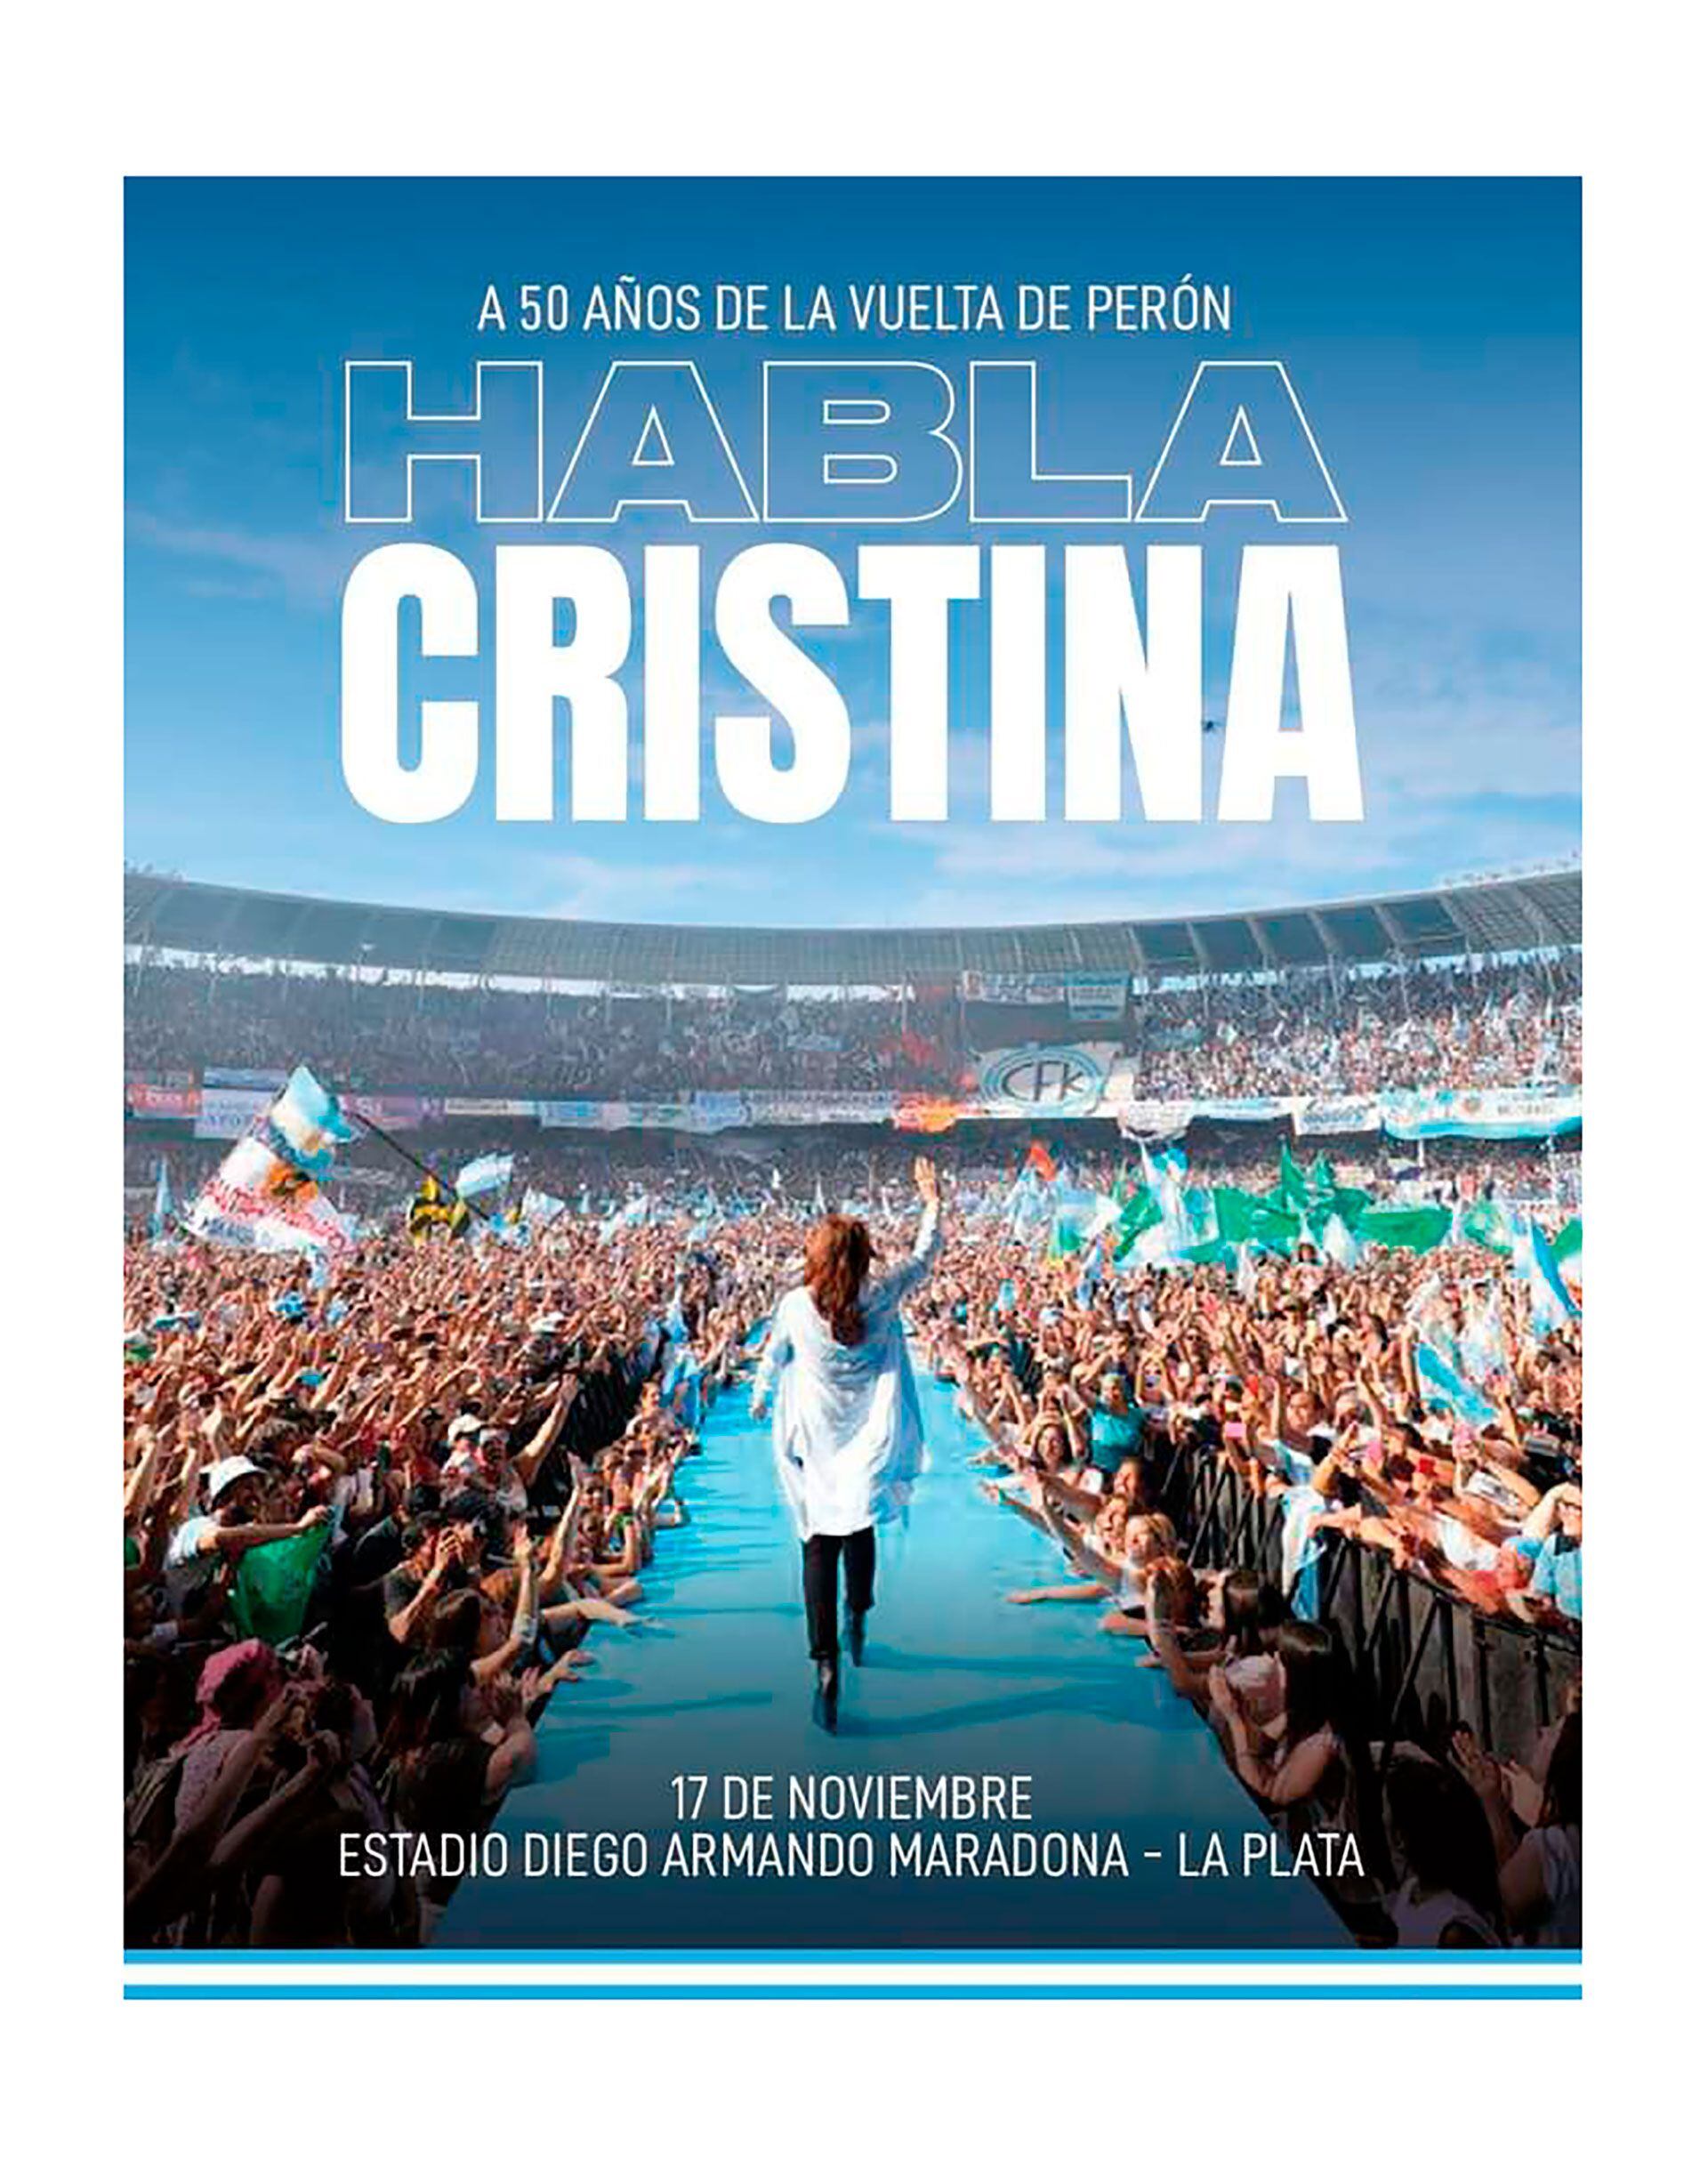 La presentación del acto de Cristina Kirchner en La Plata